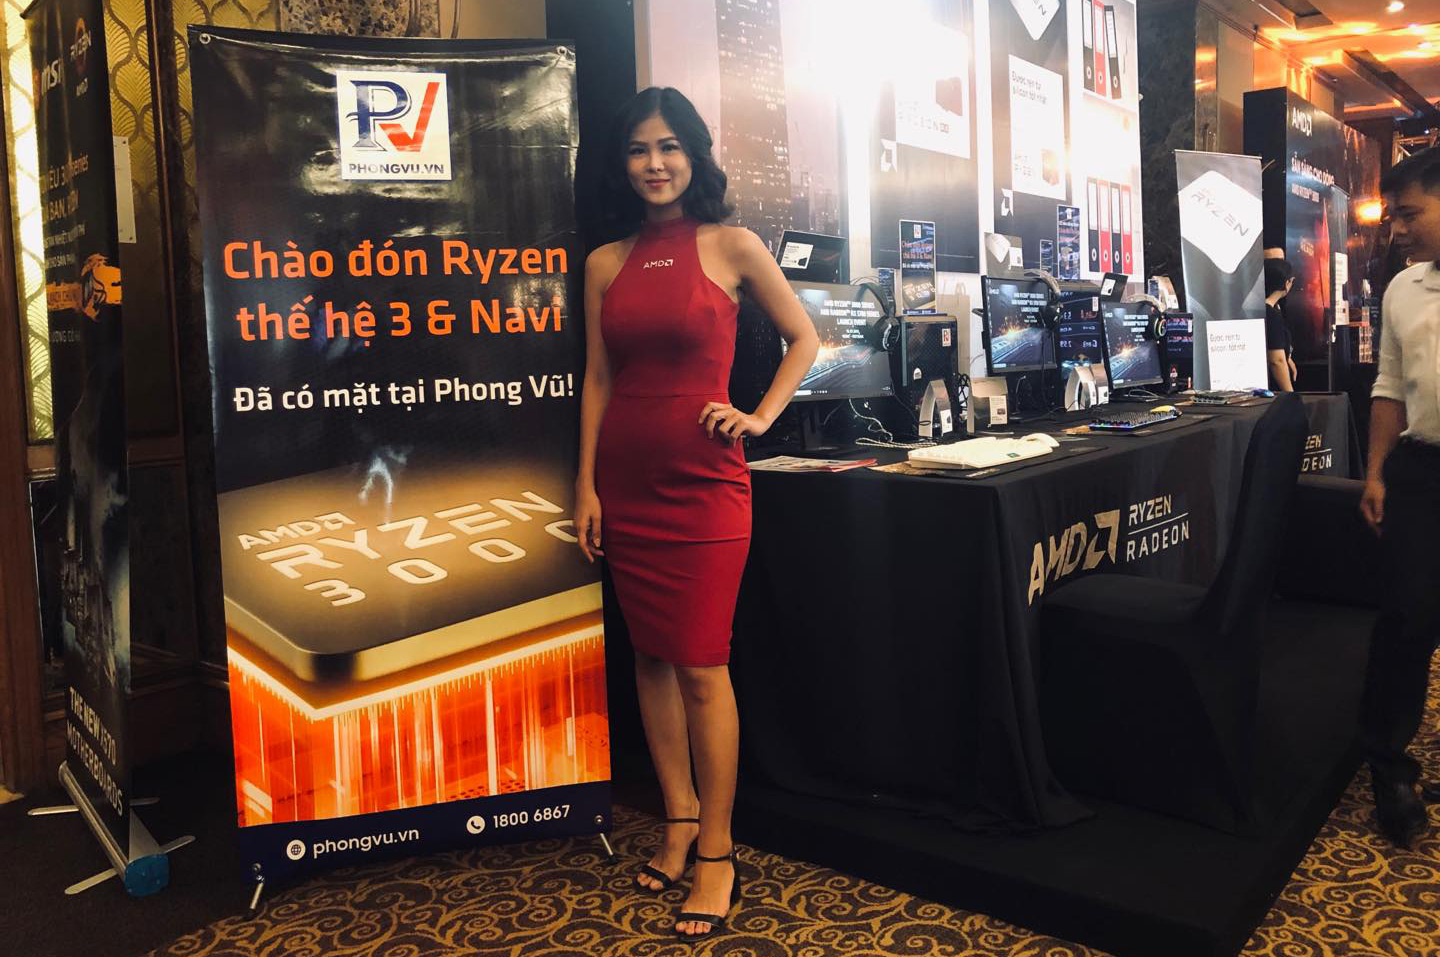 AMD ra mắt Ryzen 3000 và Radeon RX 5700, chọn Việt Nam là thị trường đầu tiên trong khối ASEAN để giới thiệu